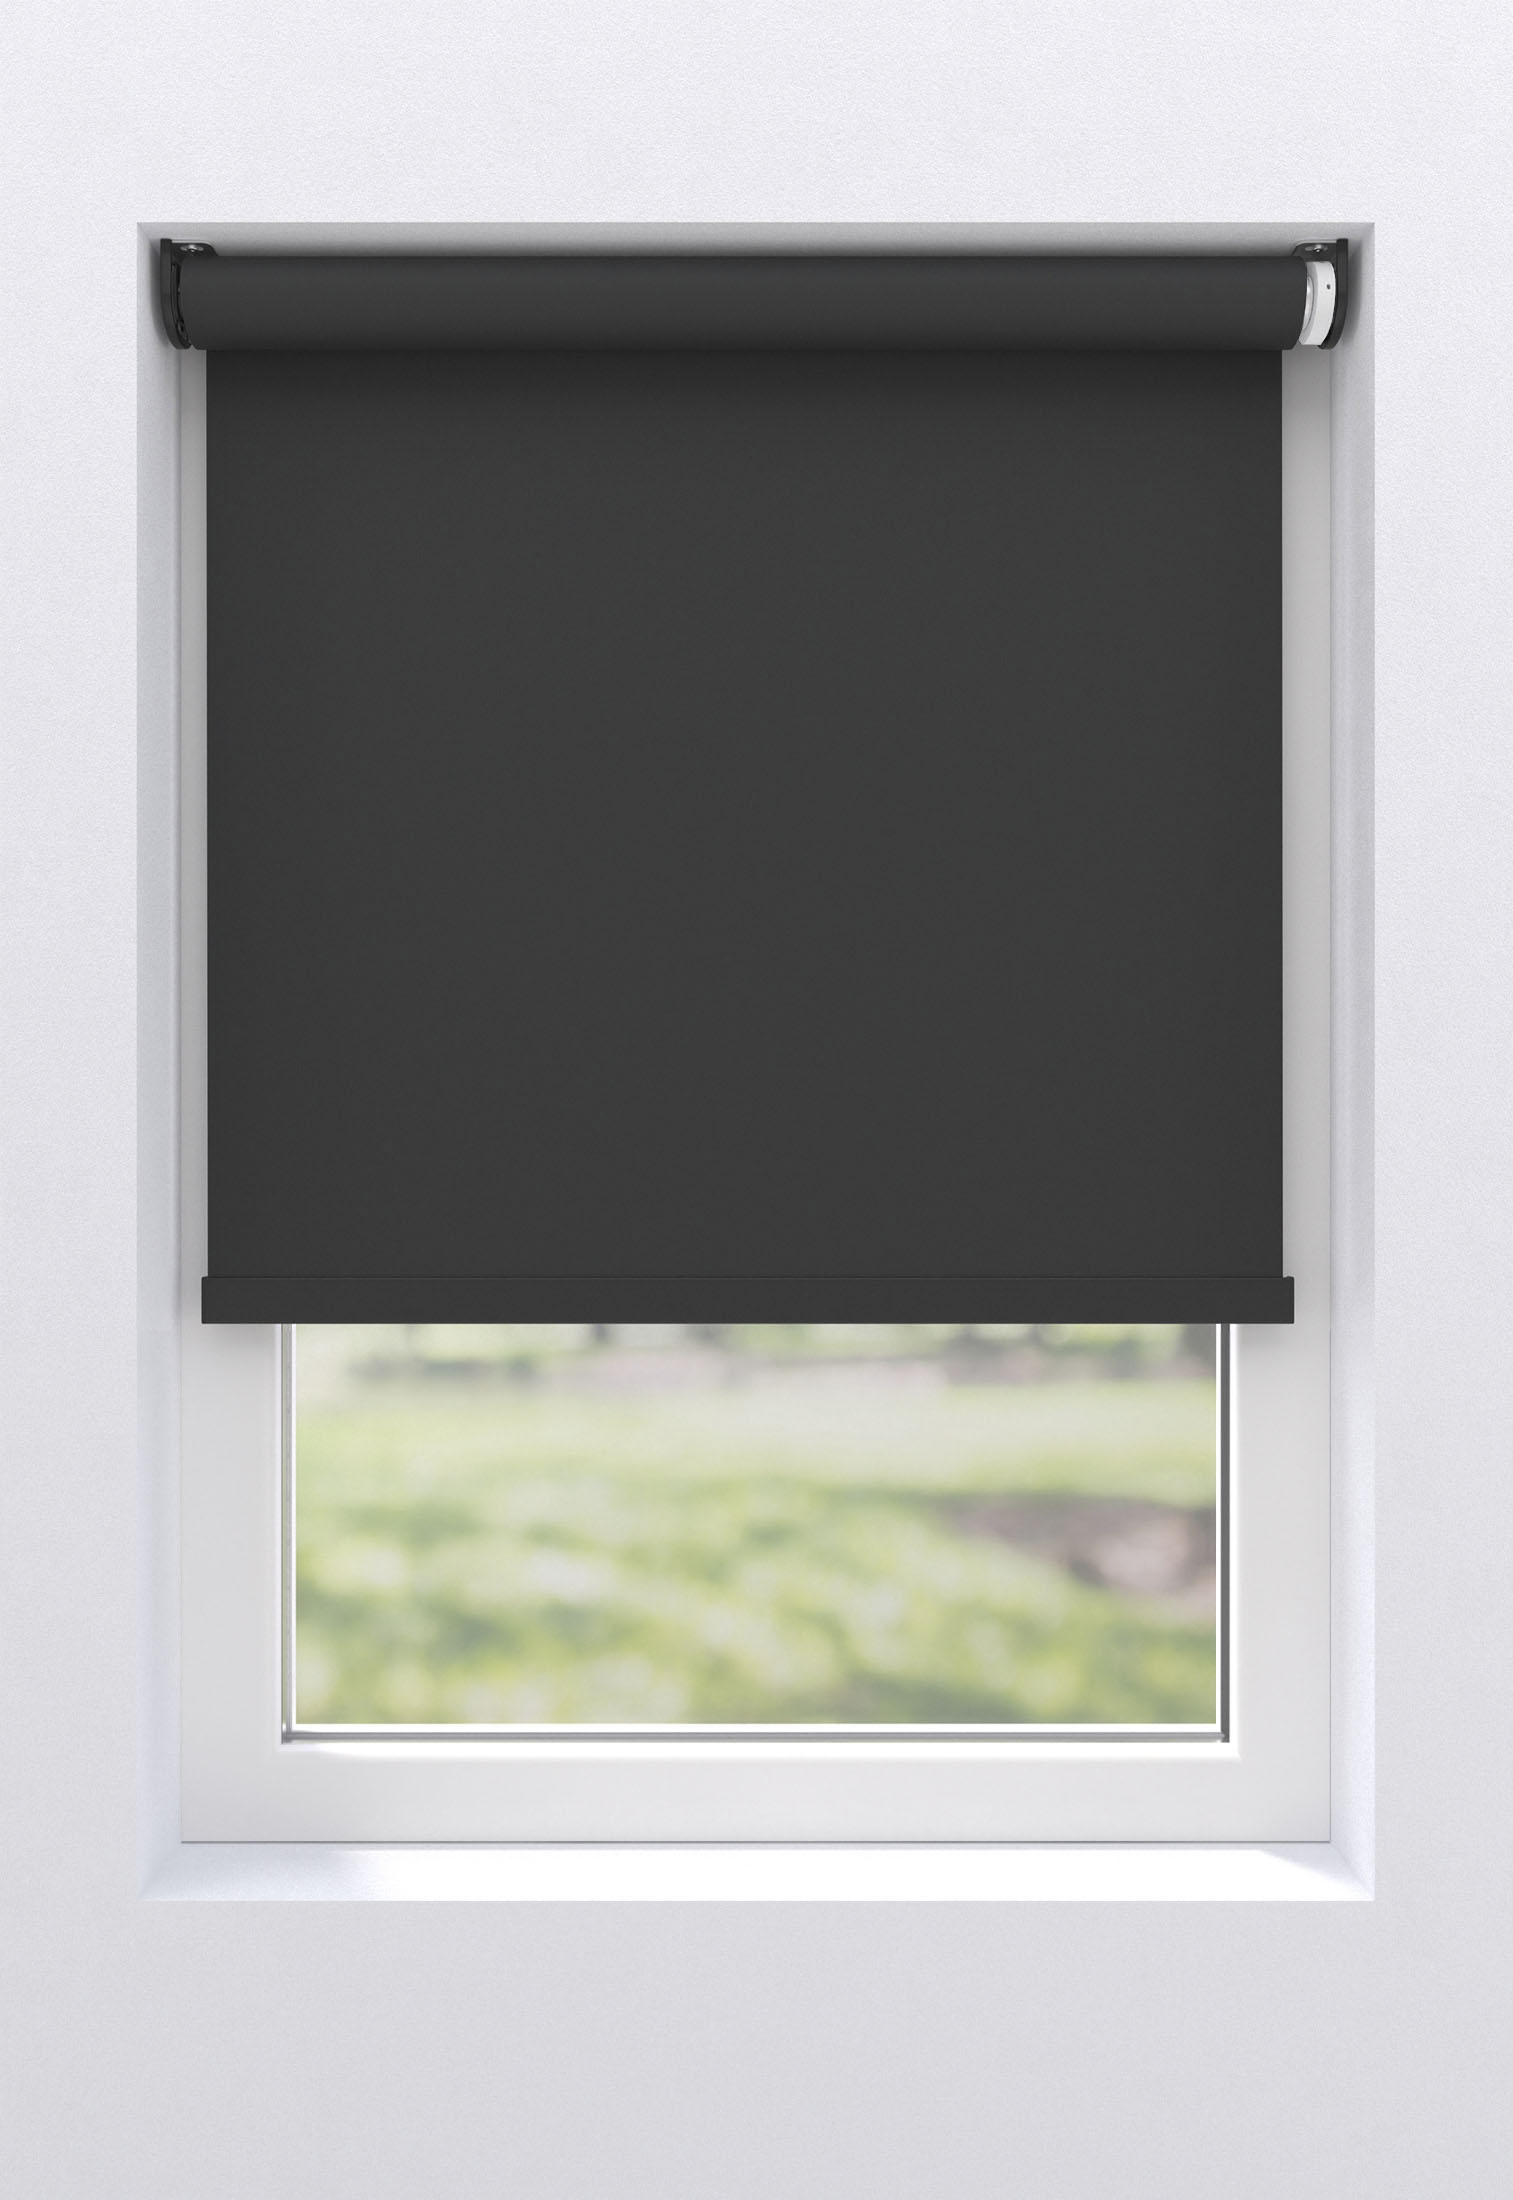 Dachfenster Verdunklungsrollo, Portable Blackout Blind, Fenster  Verdunkelung lichtundurchlässig,für Fenster ohne Bohren Dachfenster Thermo